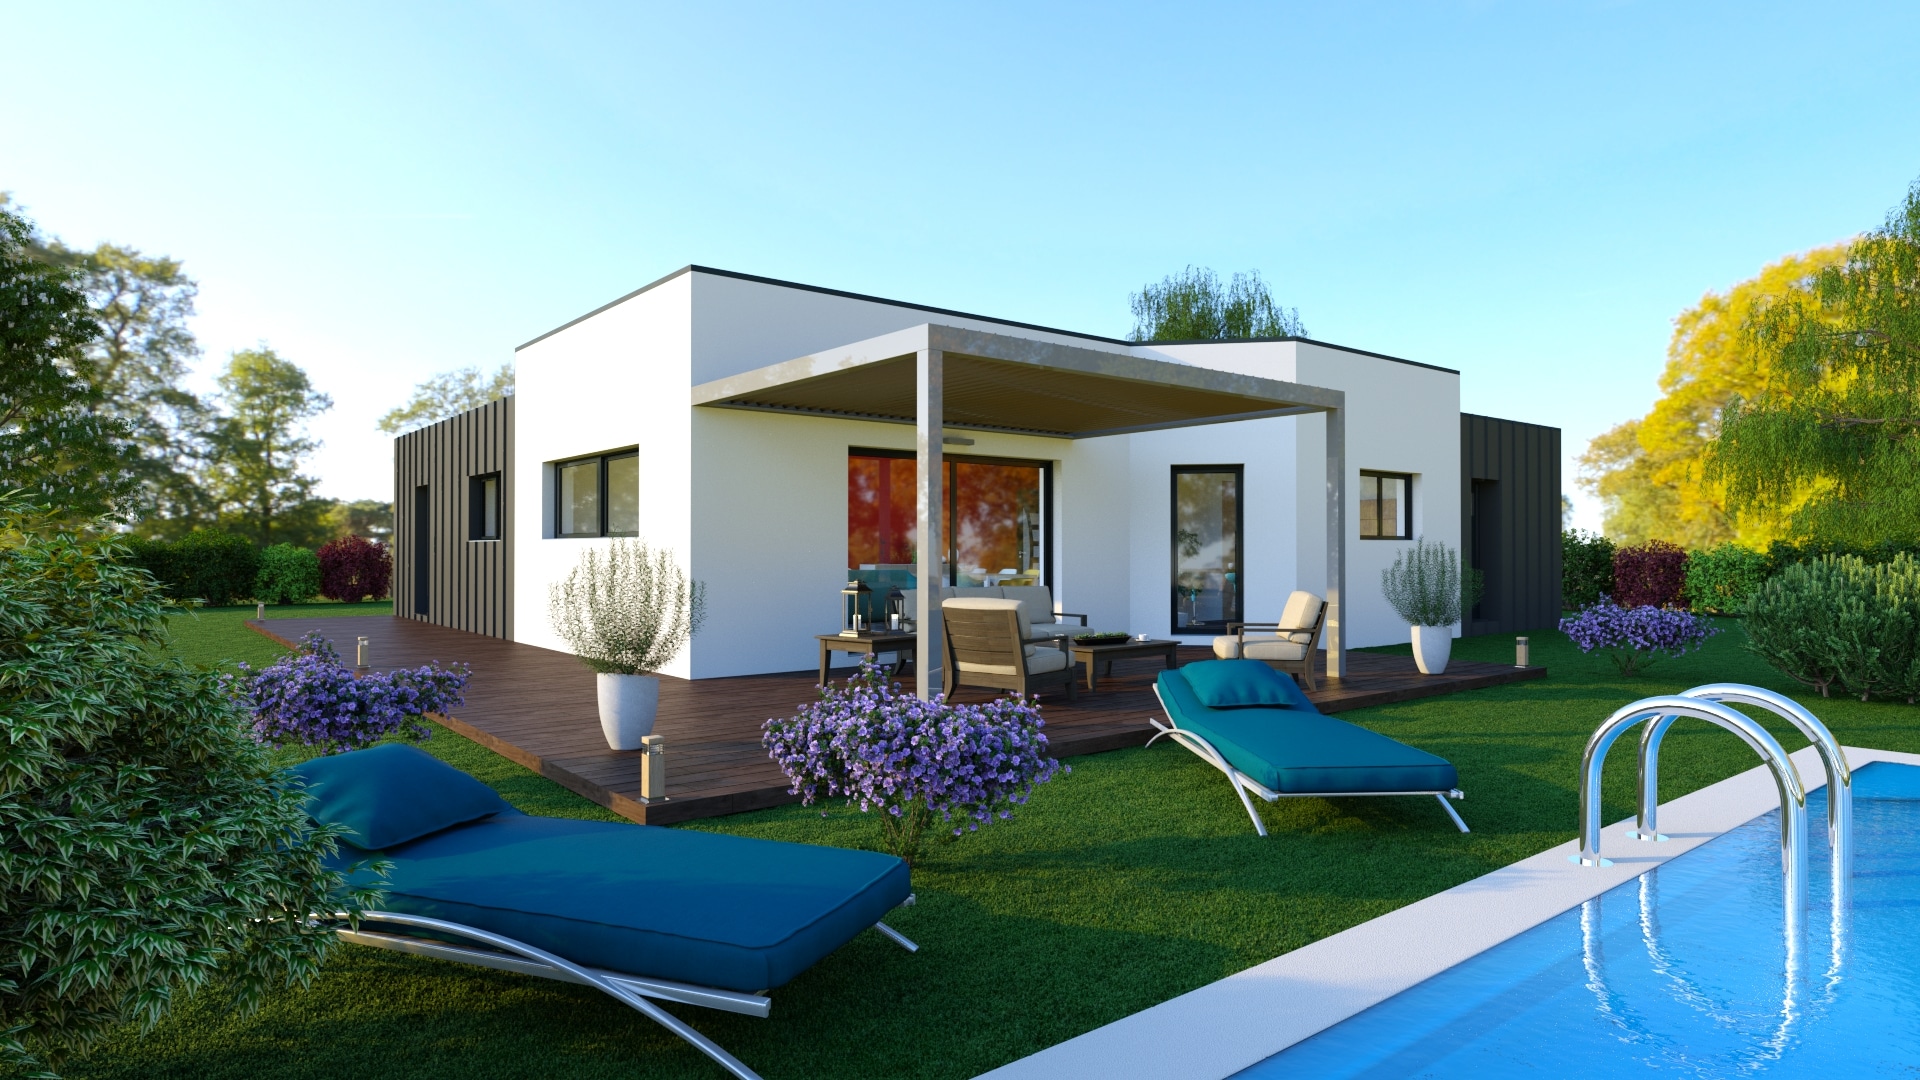 Maison neuve Loire Atlantique 111 000 € contemporaine -MF-Construction